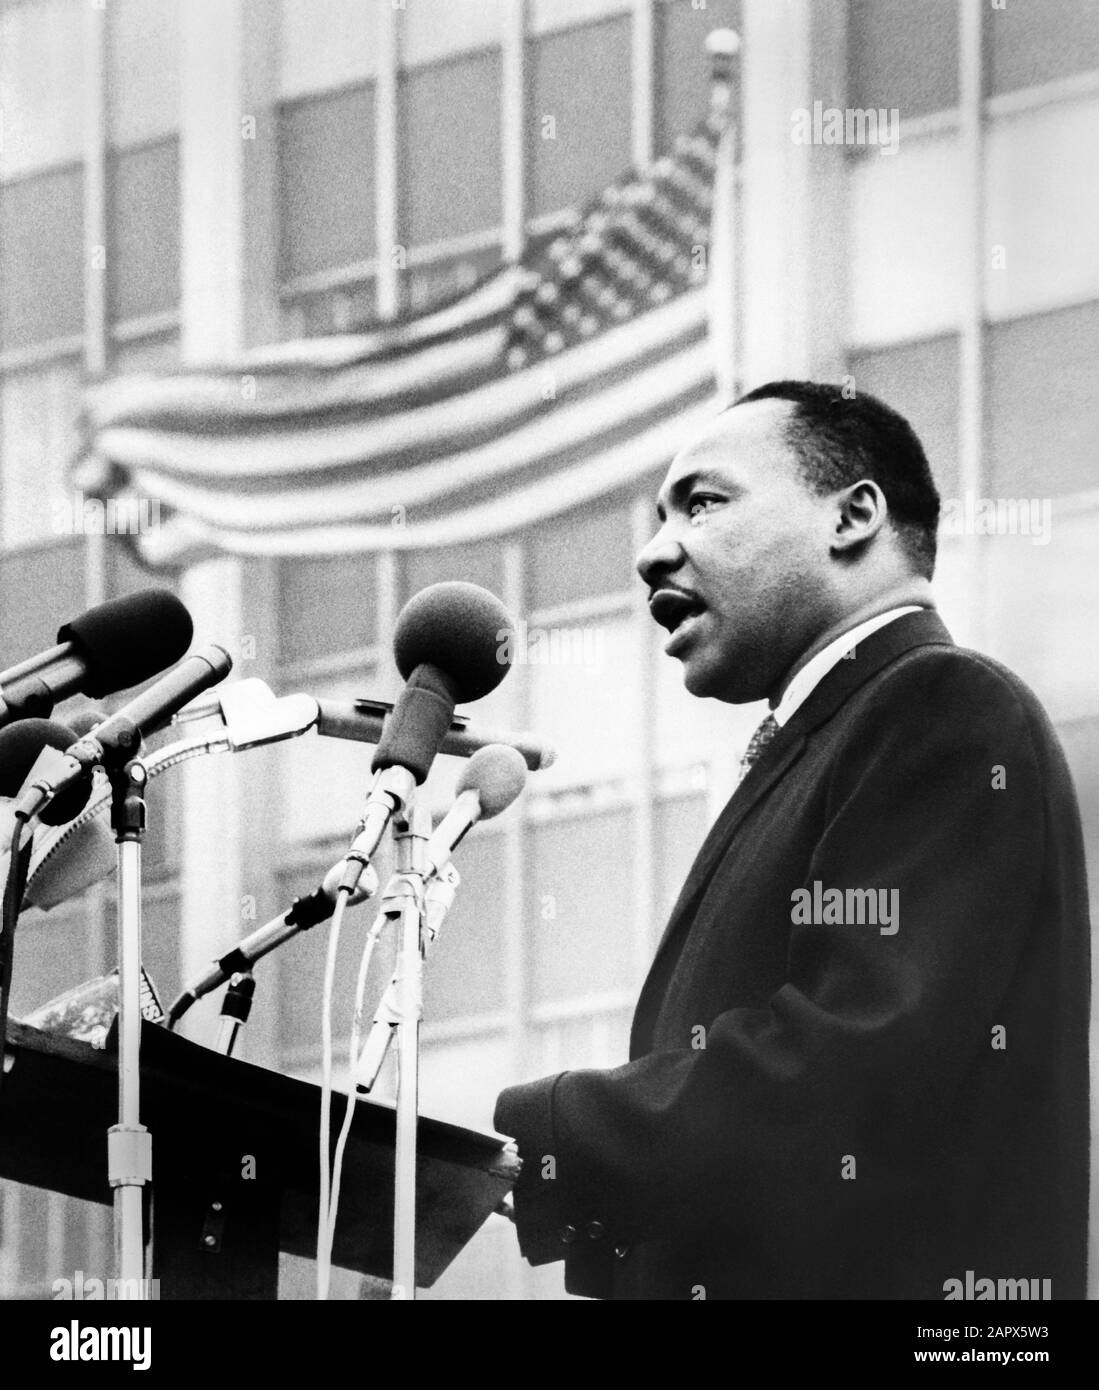 Dr Martin Luther King, Jr., s'exprimant aux microphones lors d'une manifestation anti-guerre à New York le 15 avril 1967. Banque D'Images